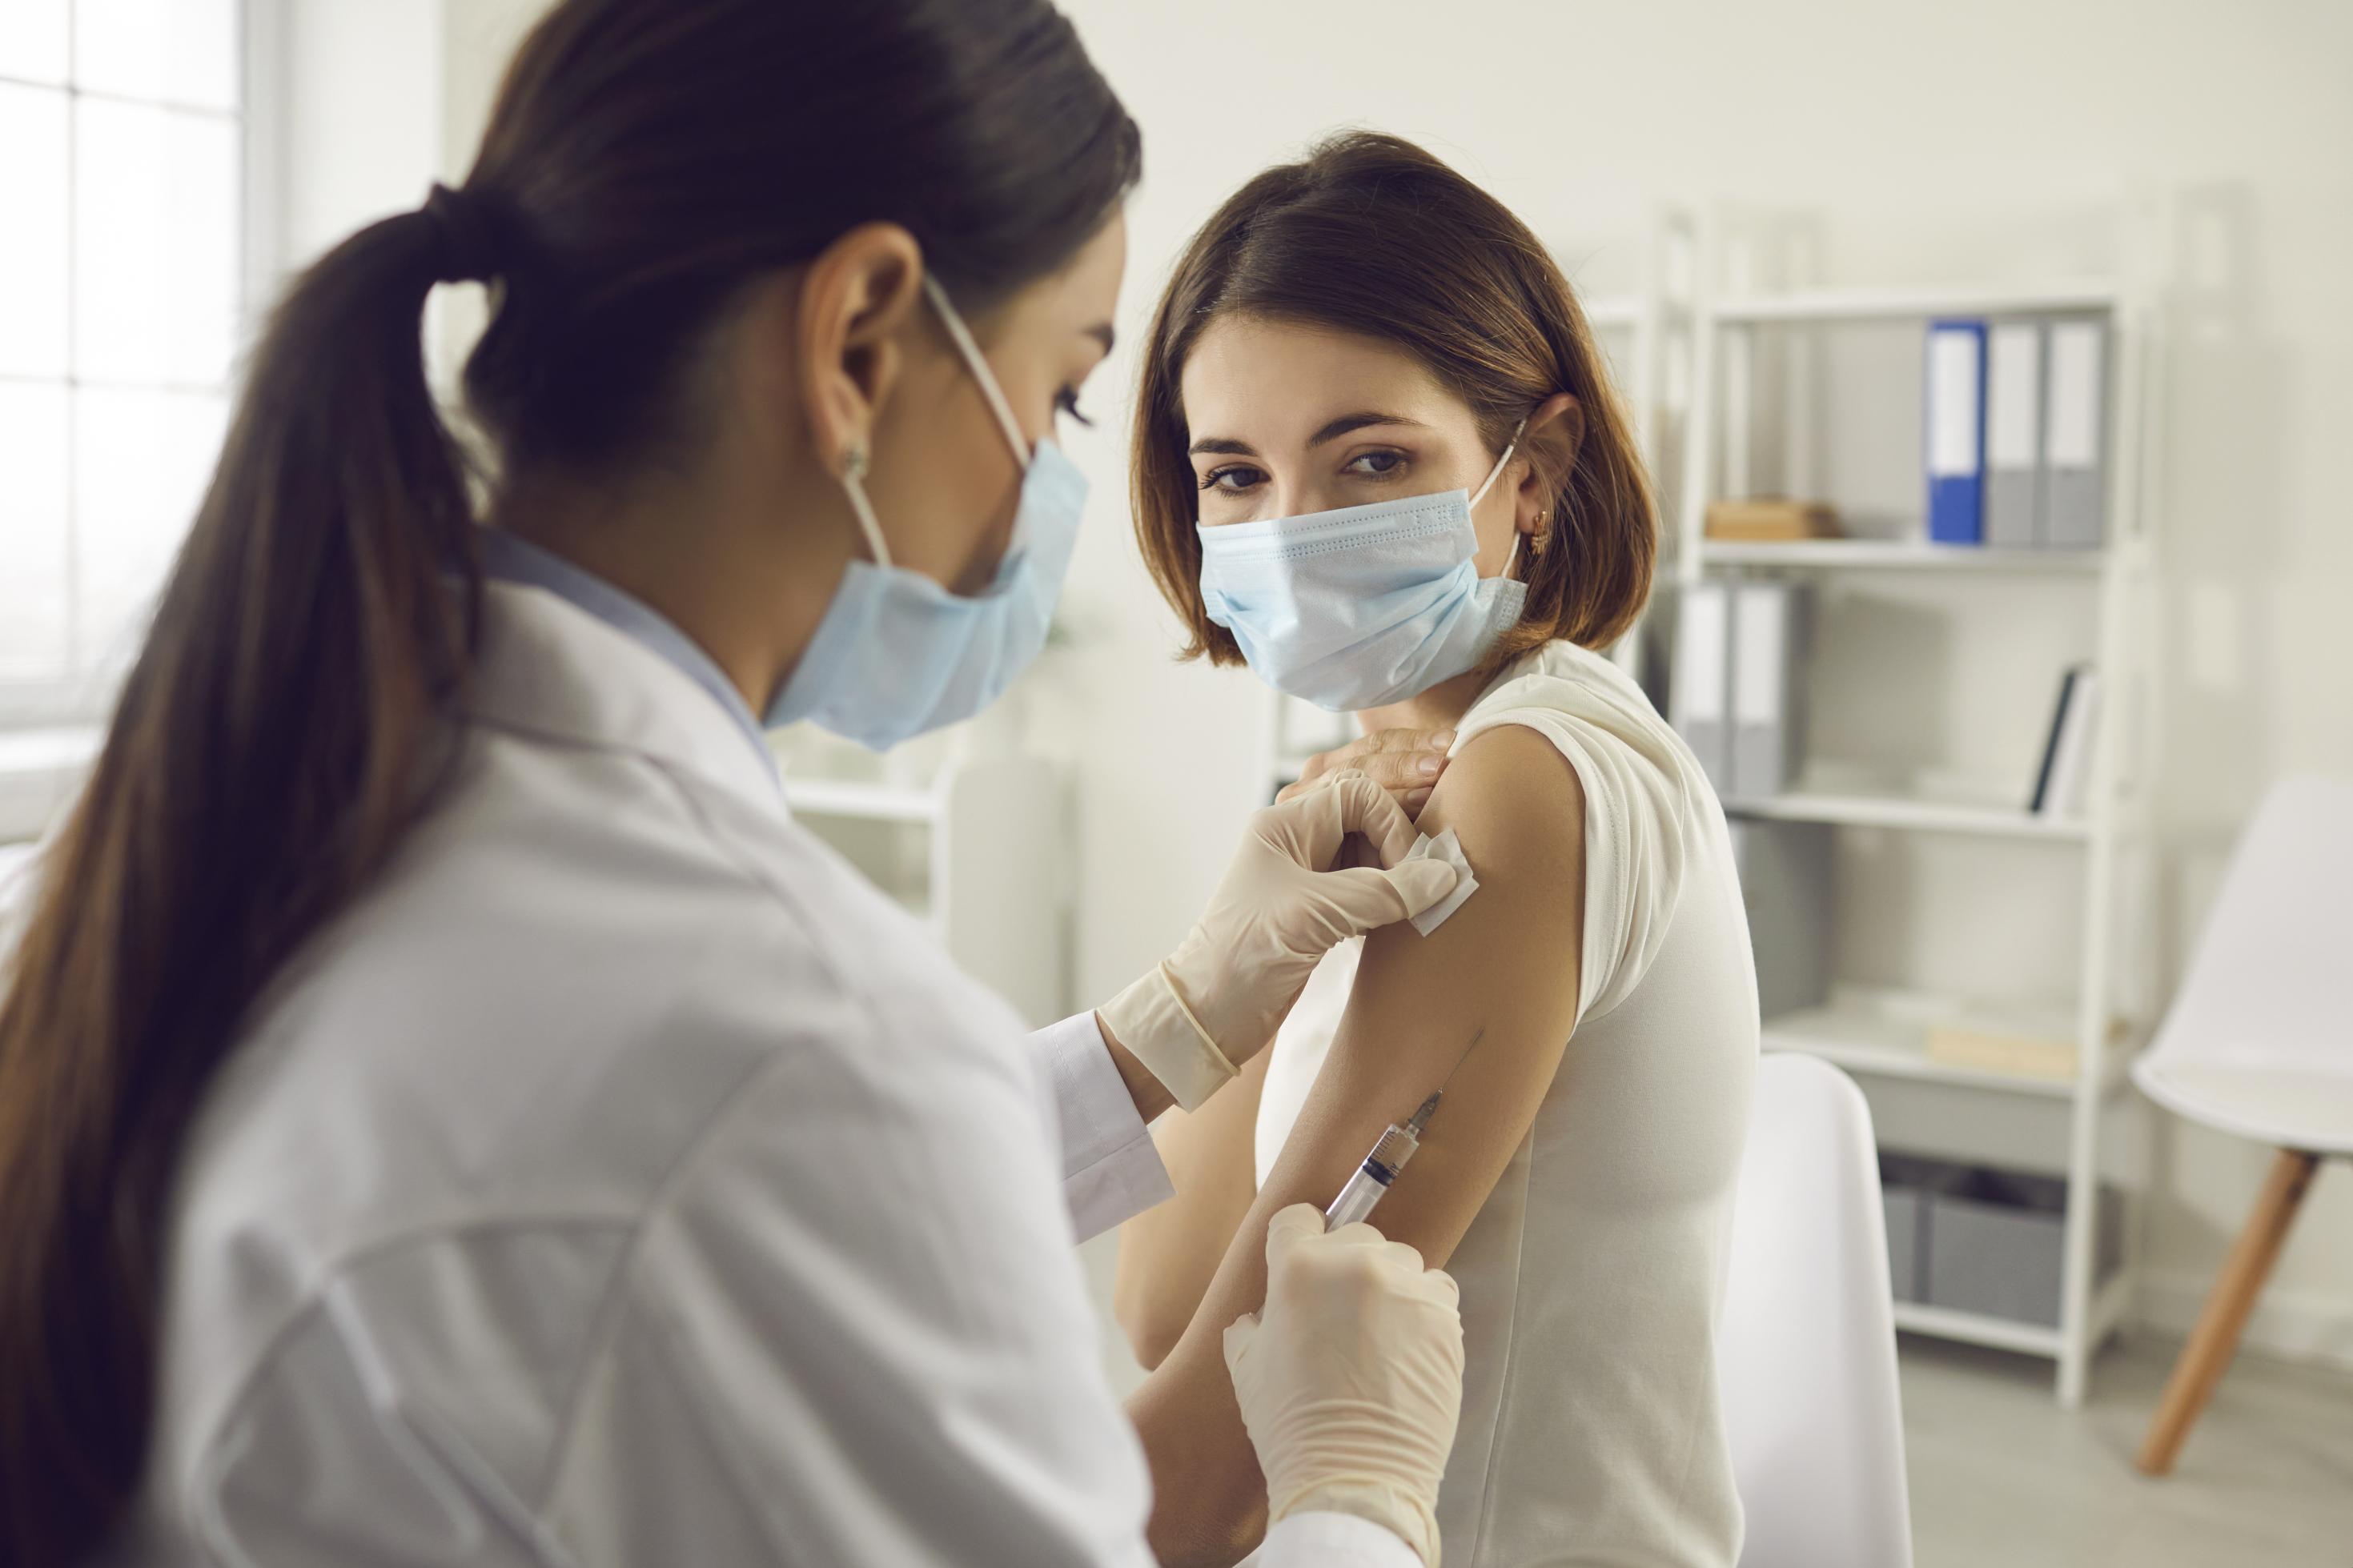 Impfung und Prävention vor Covid-19: Eine Frau mit medizinischer Gesichtsmaske erhält von einer Ärztin eine Impfung gegen Covid-19.